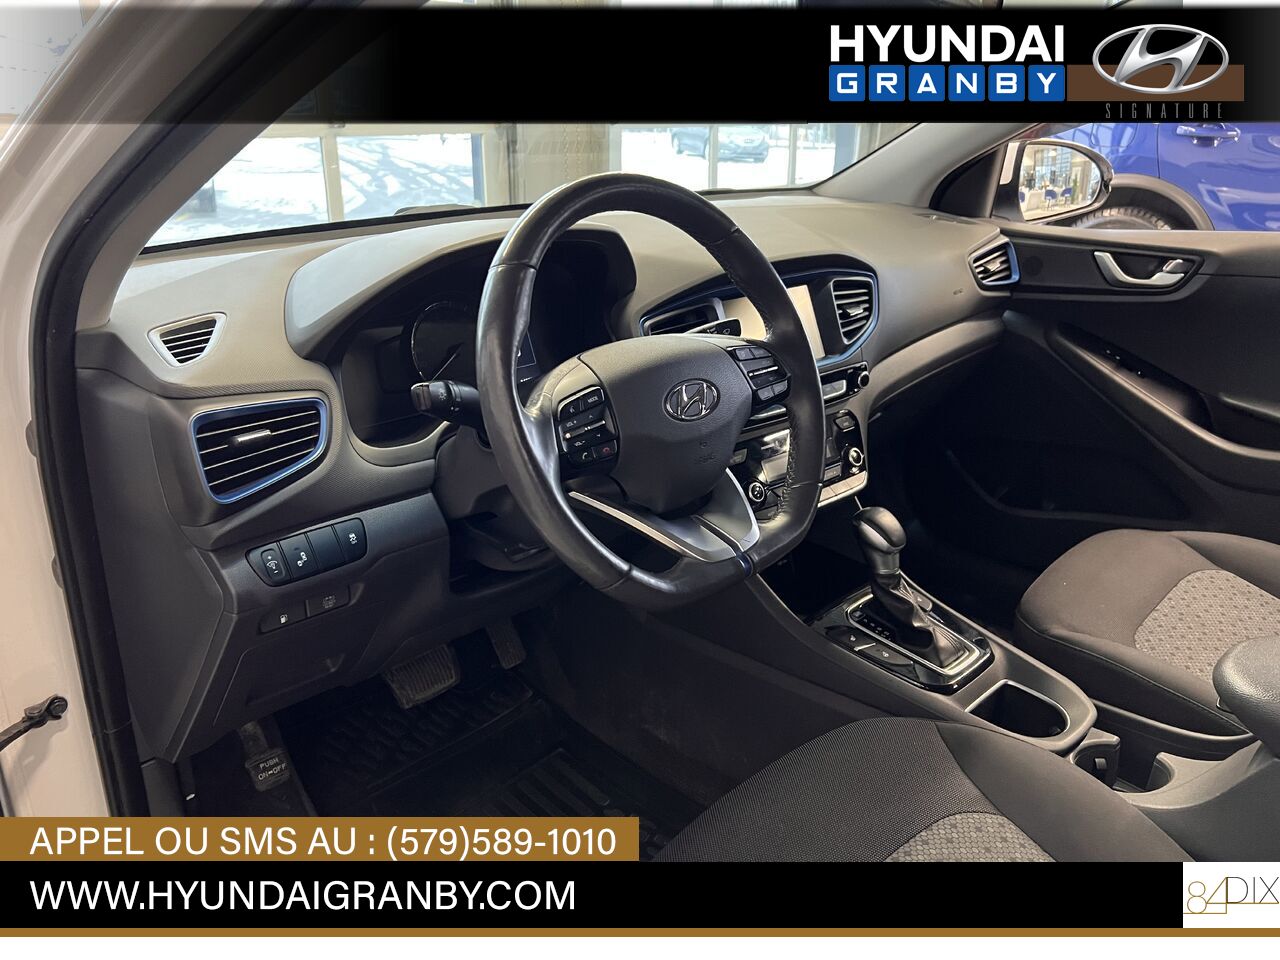 2017 Hyundai Ioniq hybride Granby - photo #8